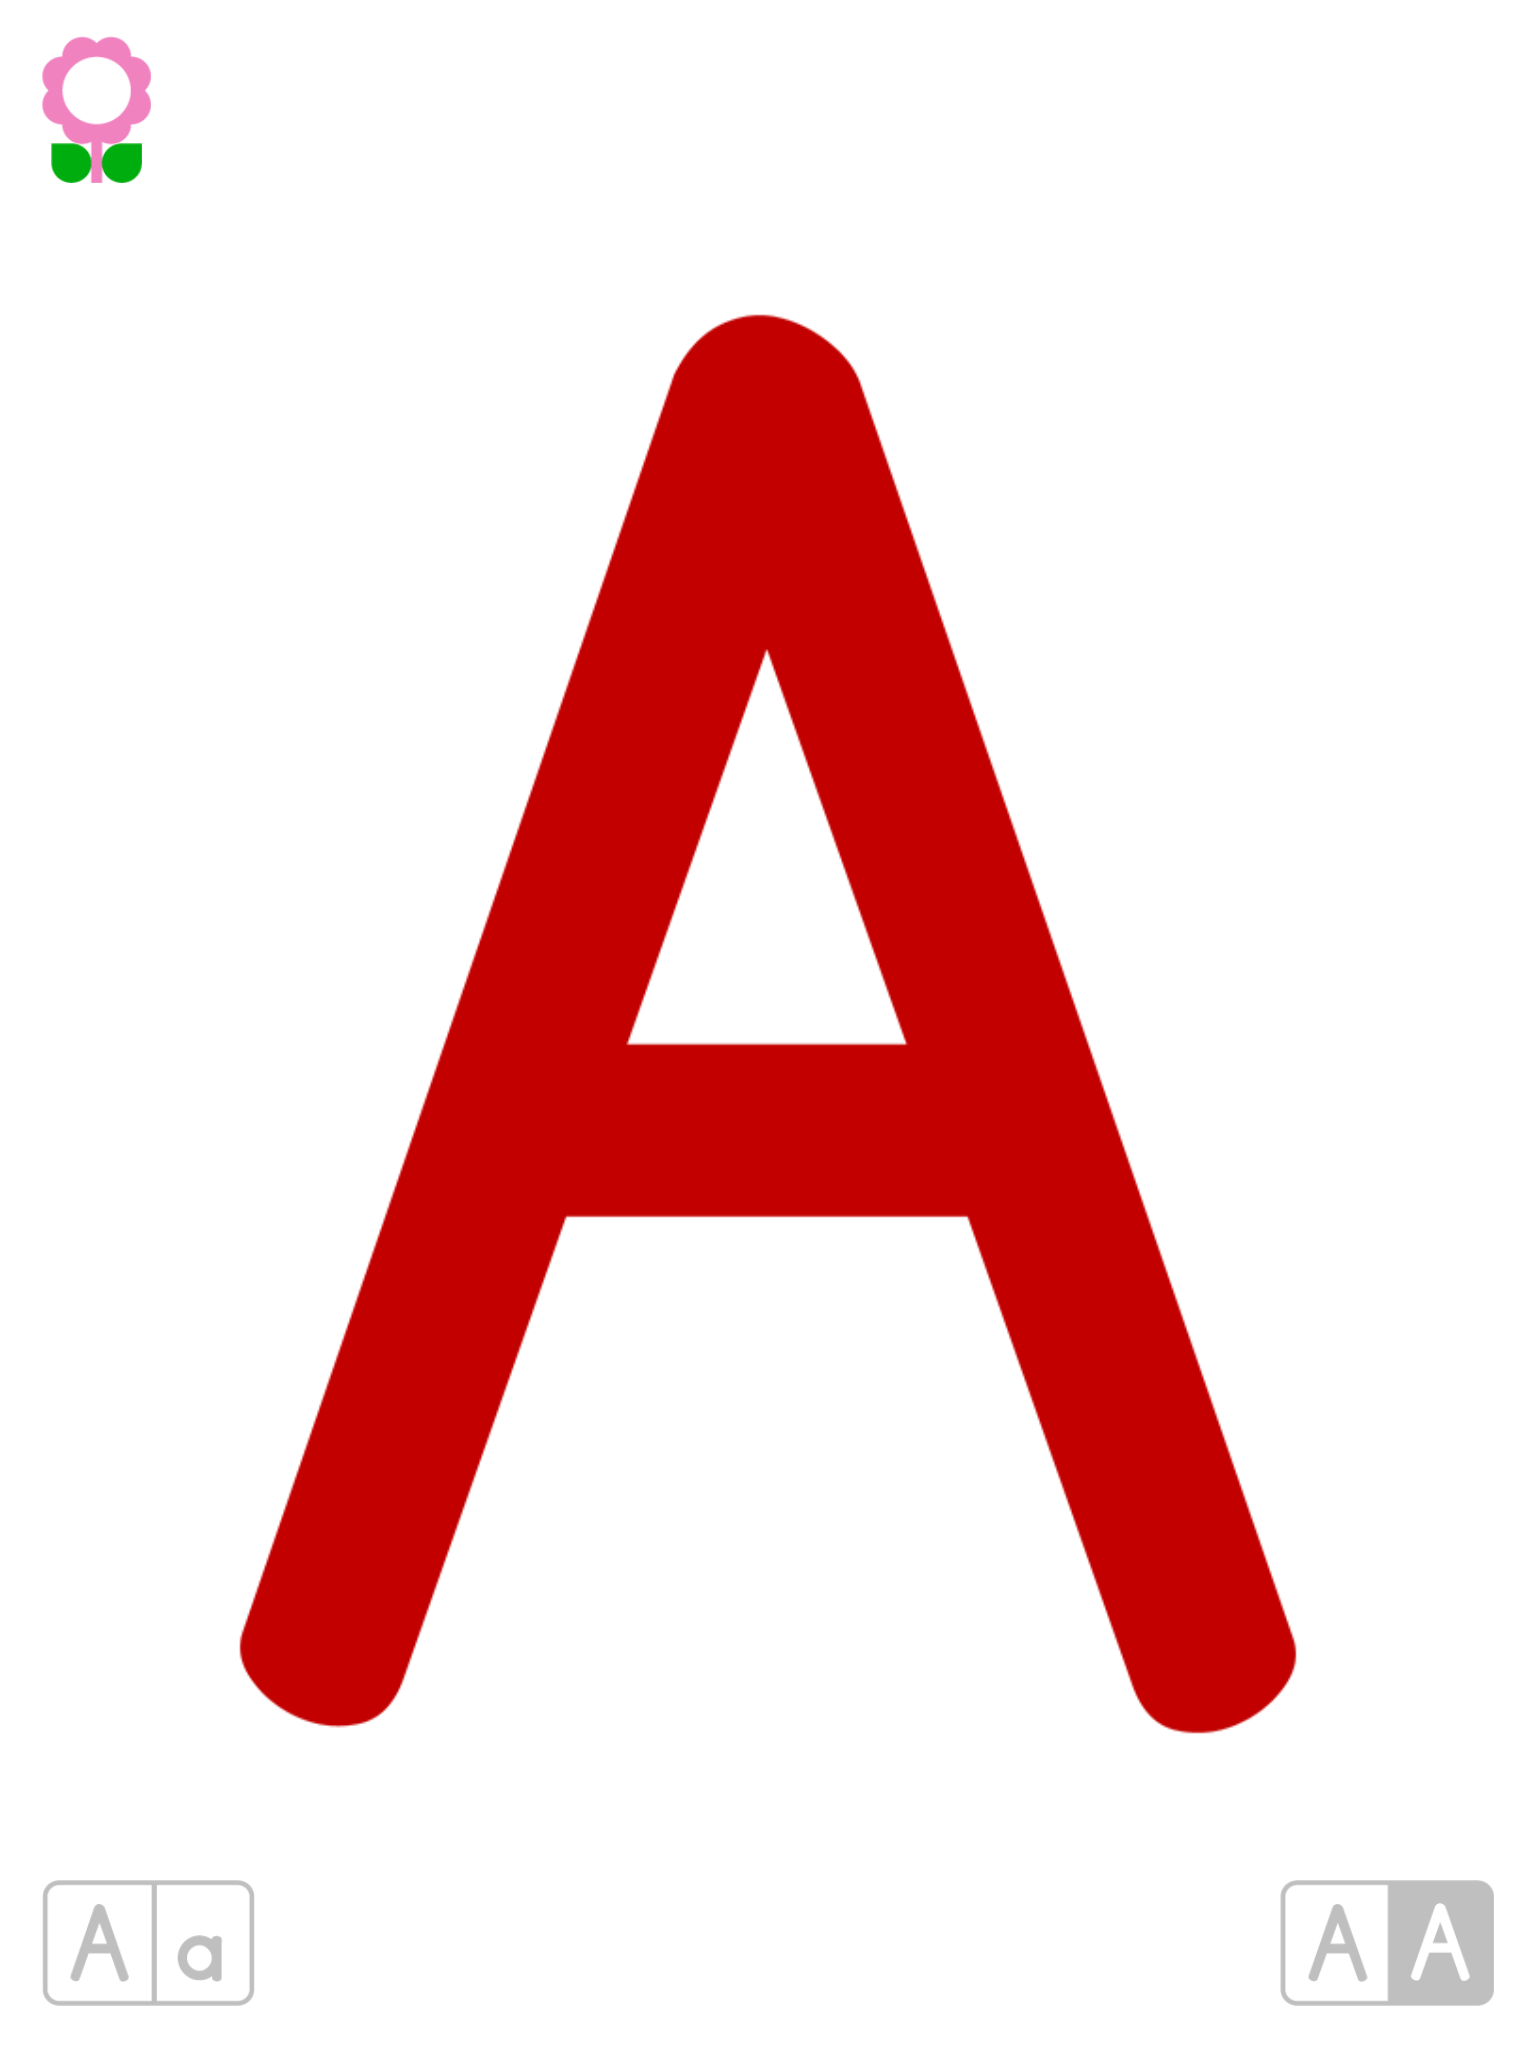 Das Bunte ABC (Alphabetische Lernkarten für Kindergartenkinder)